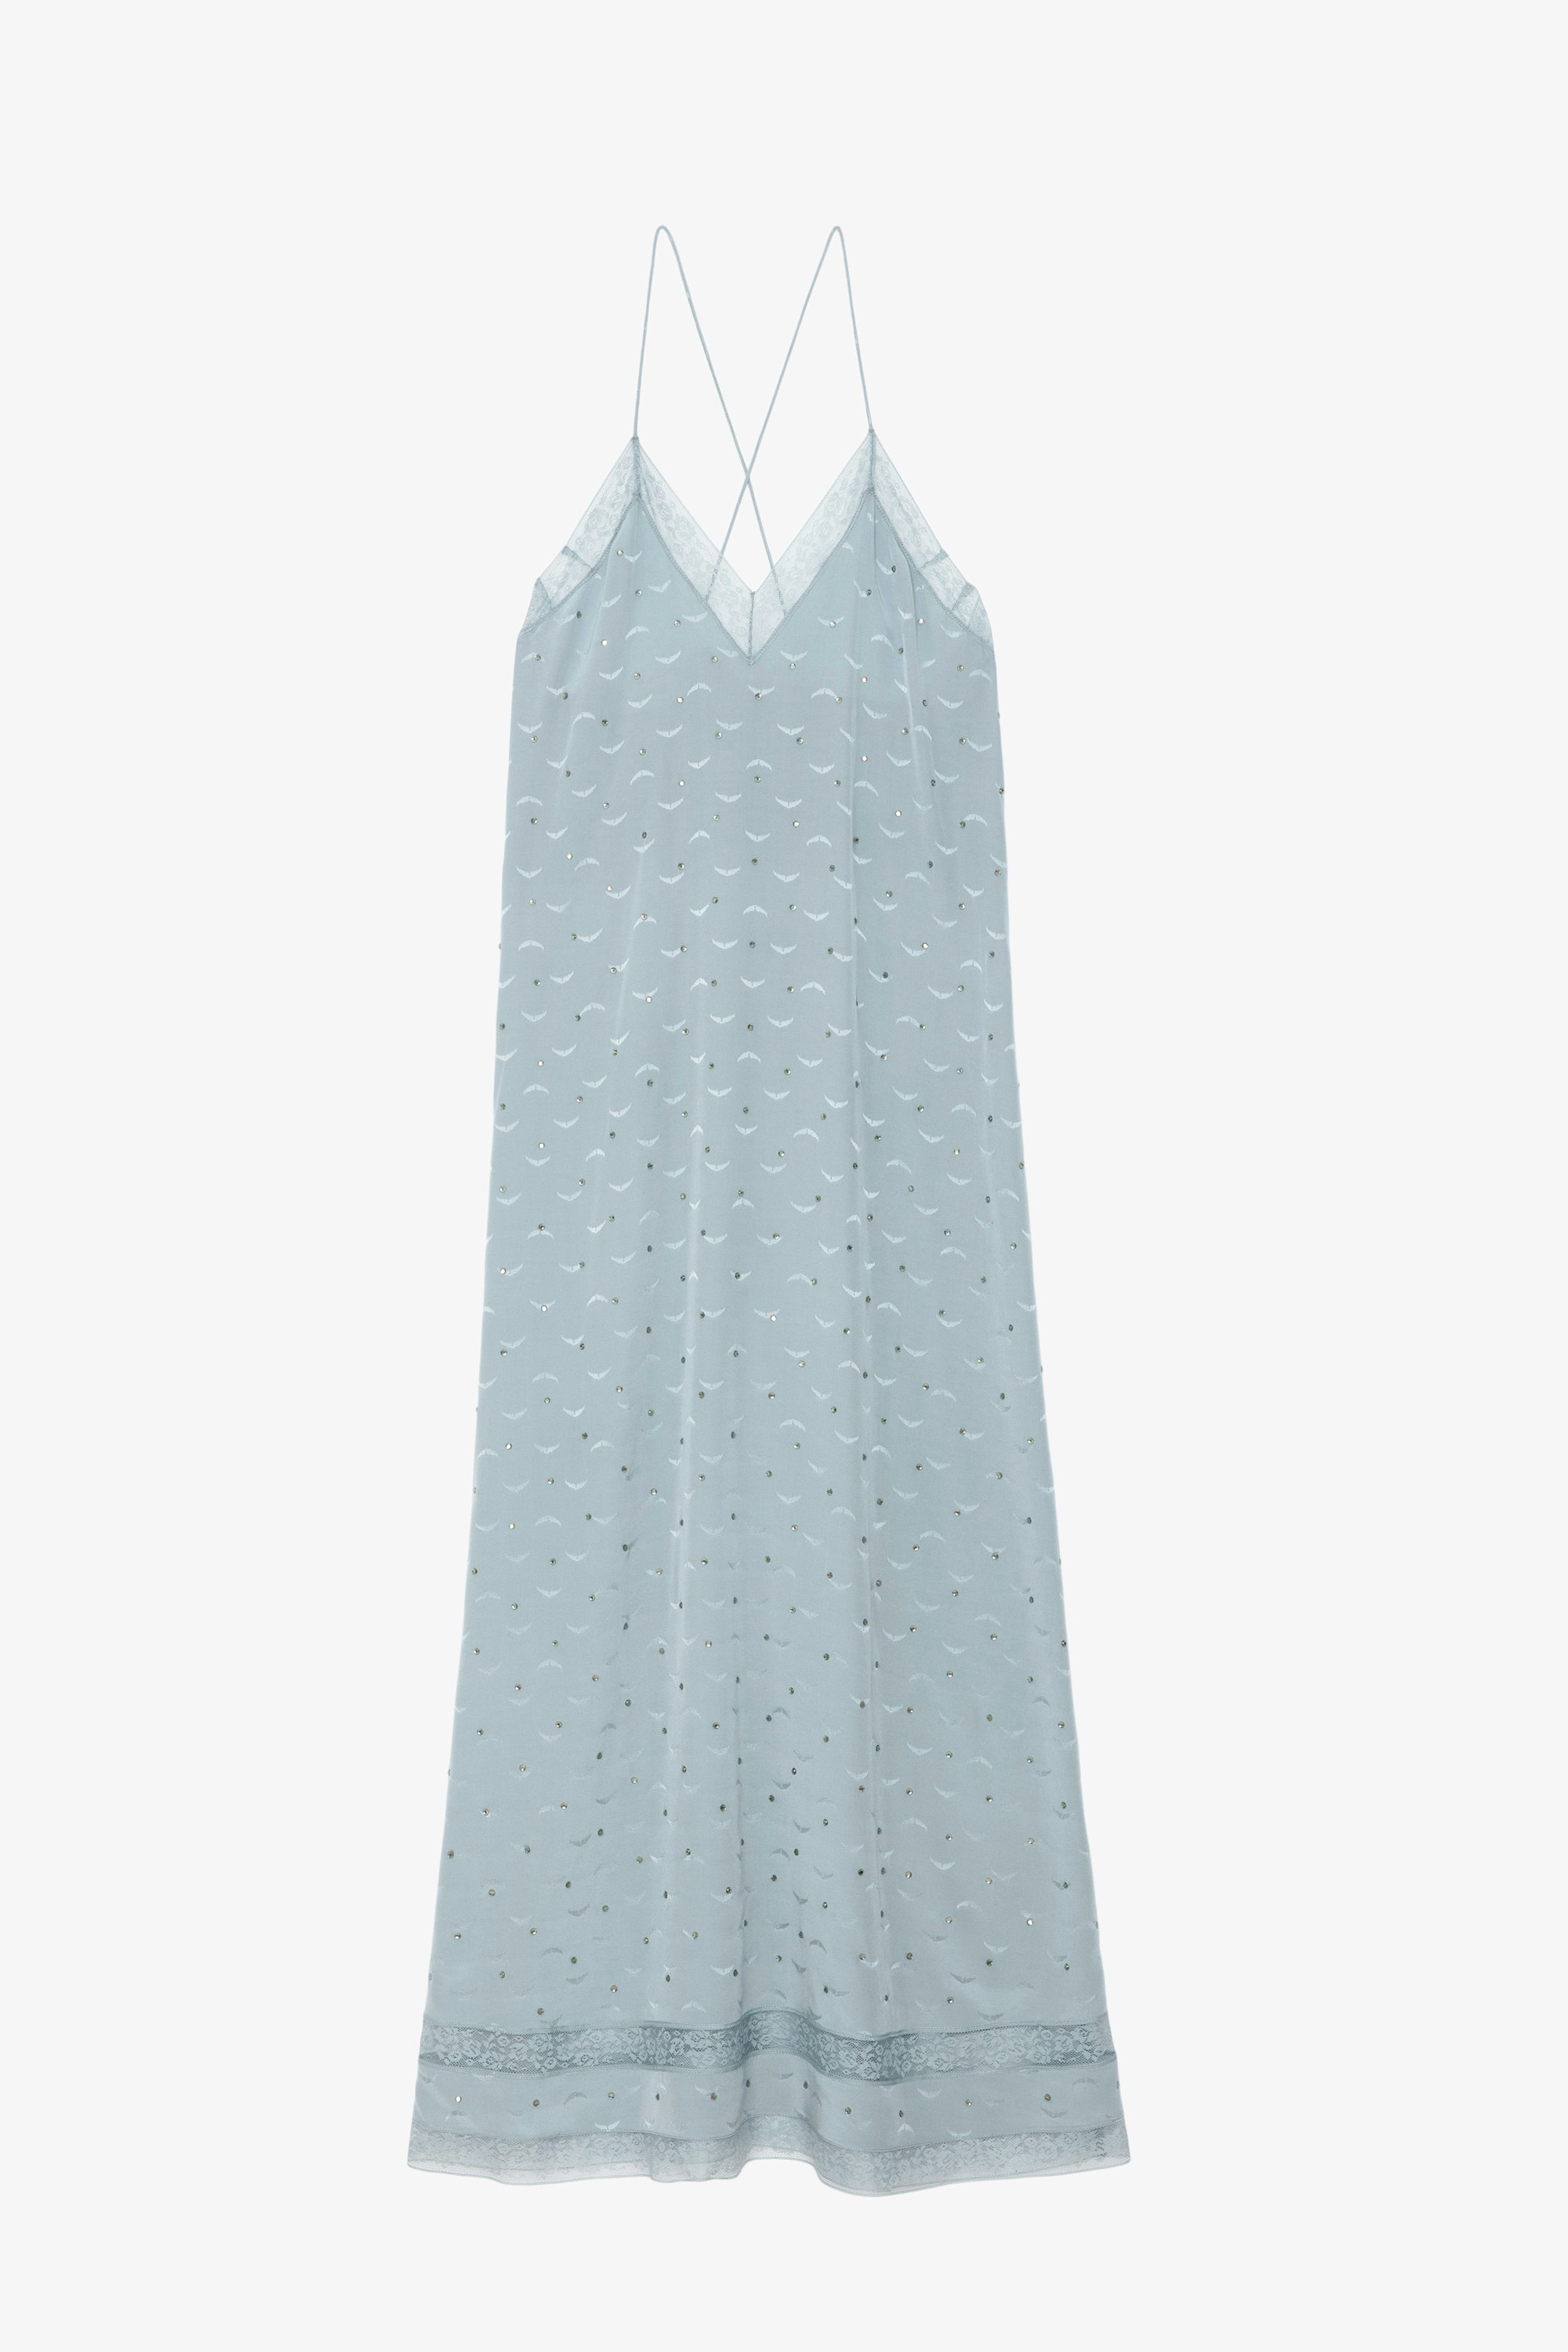 Robe Reman Soie Jacquard - Robe longue esprit lingerie en soie bleue ciel à jacquard ailes, strass, dentelle et nouée au dos.